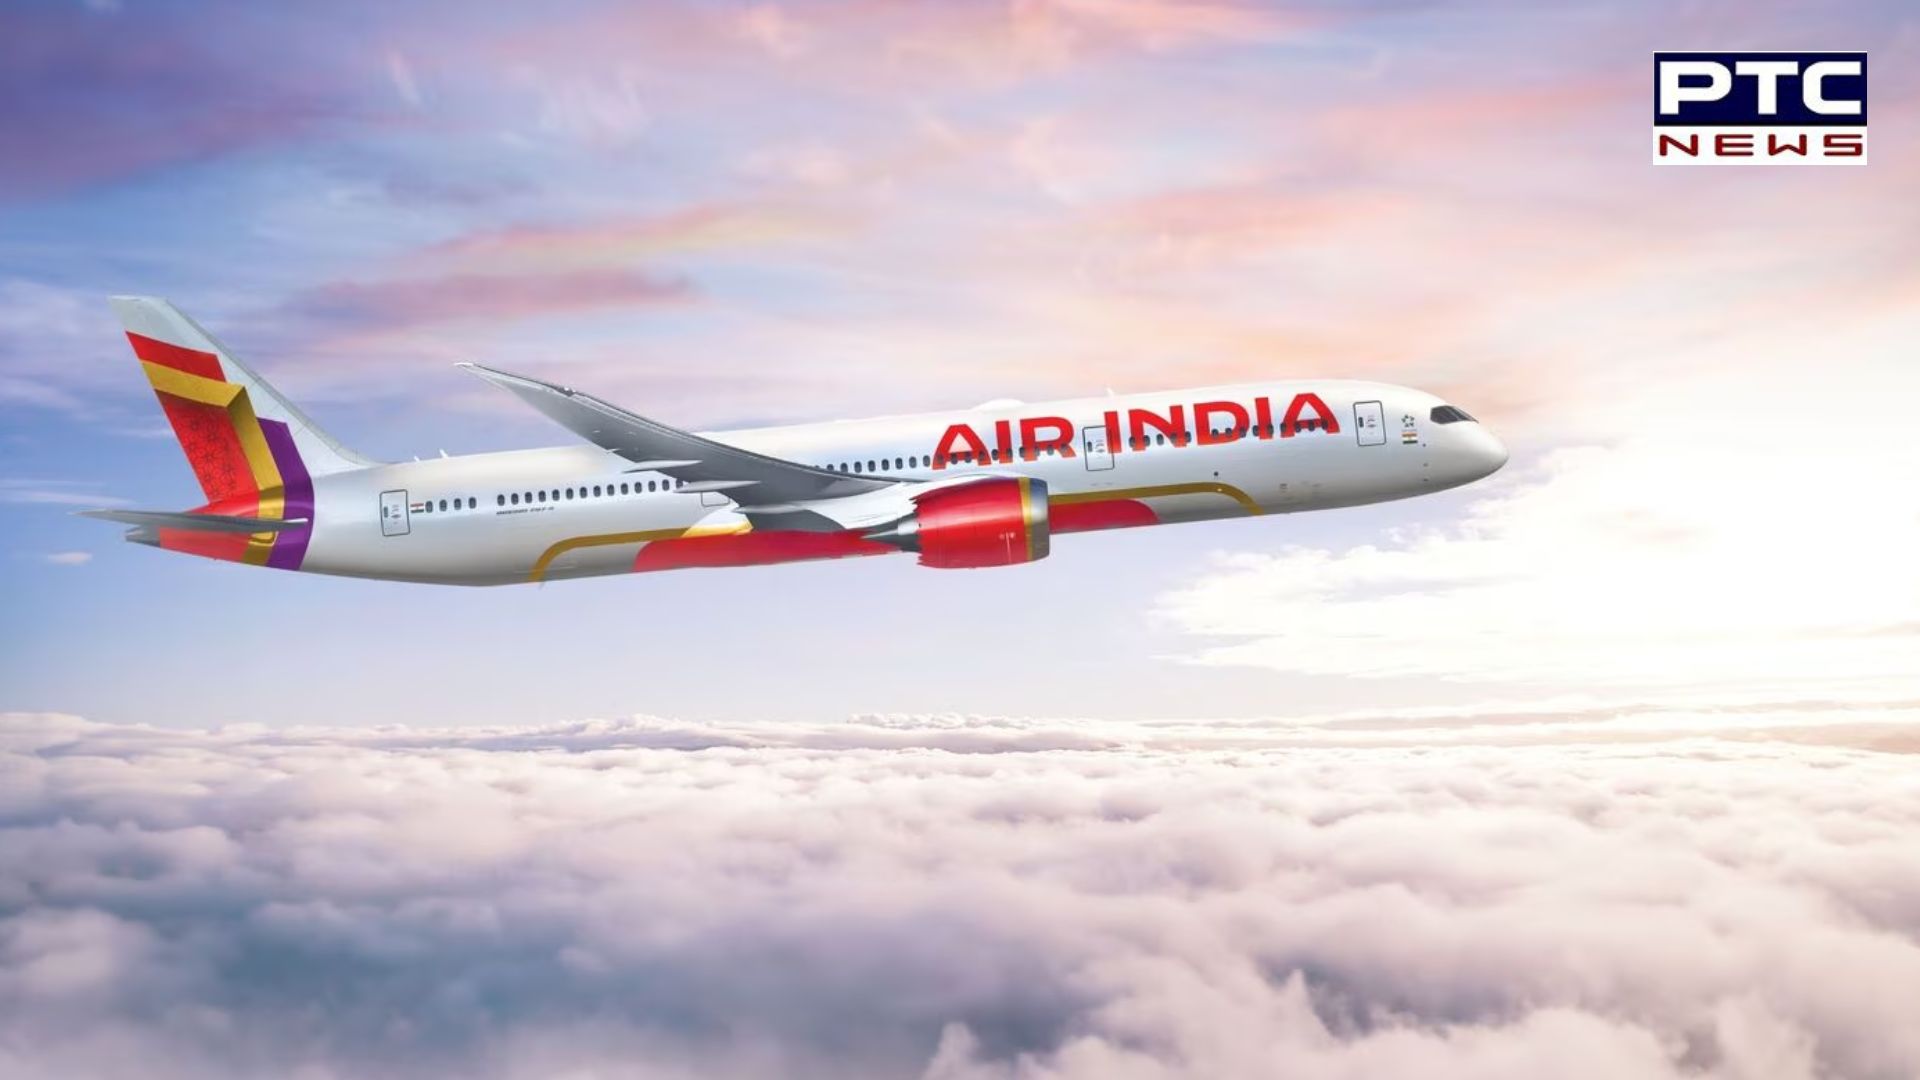 Air India: ਉਡਾਣ ਬੇਨਿਯਮੀਆਂ ਲਈ ਏਅਰ ਇੰਡੀਆ ਨੂੰ 1 ਕਰੋੜ ਤੋਂ ਵੱਧ ਦਾ ਜੁਰਮਾਨਾ